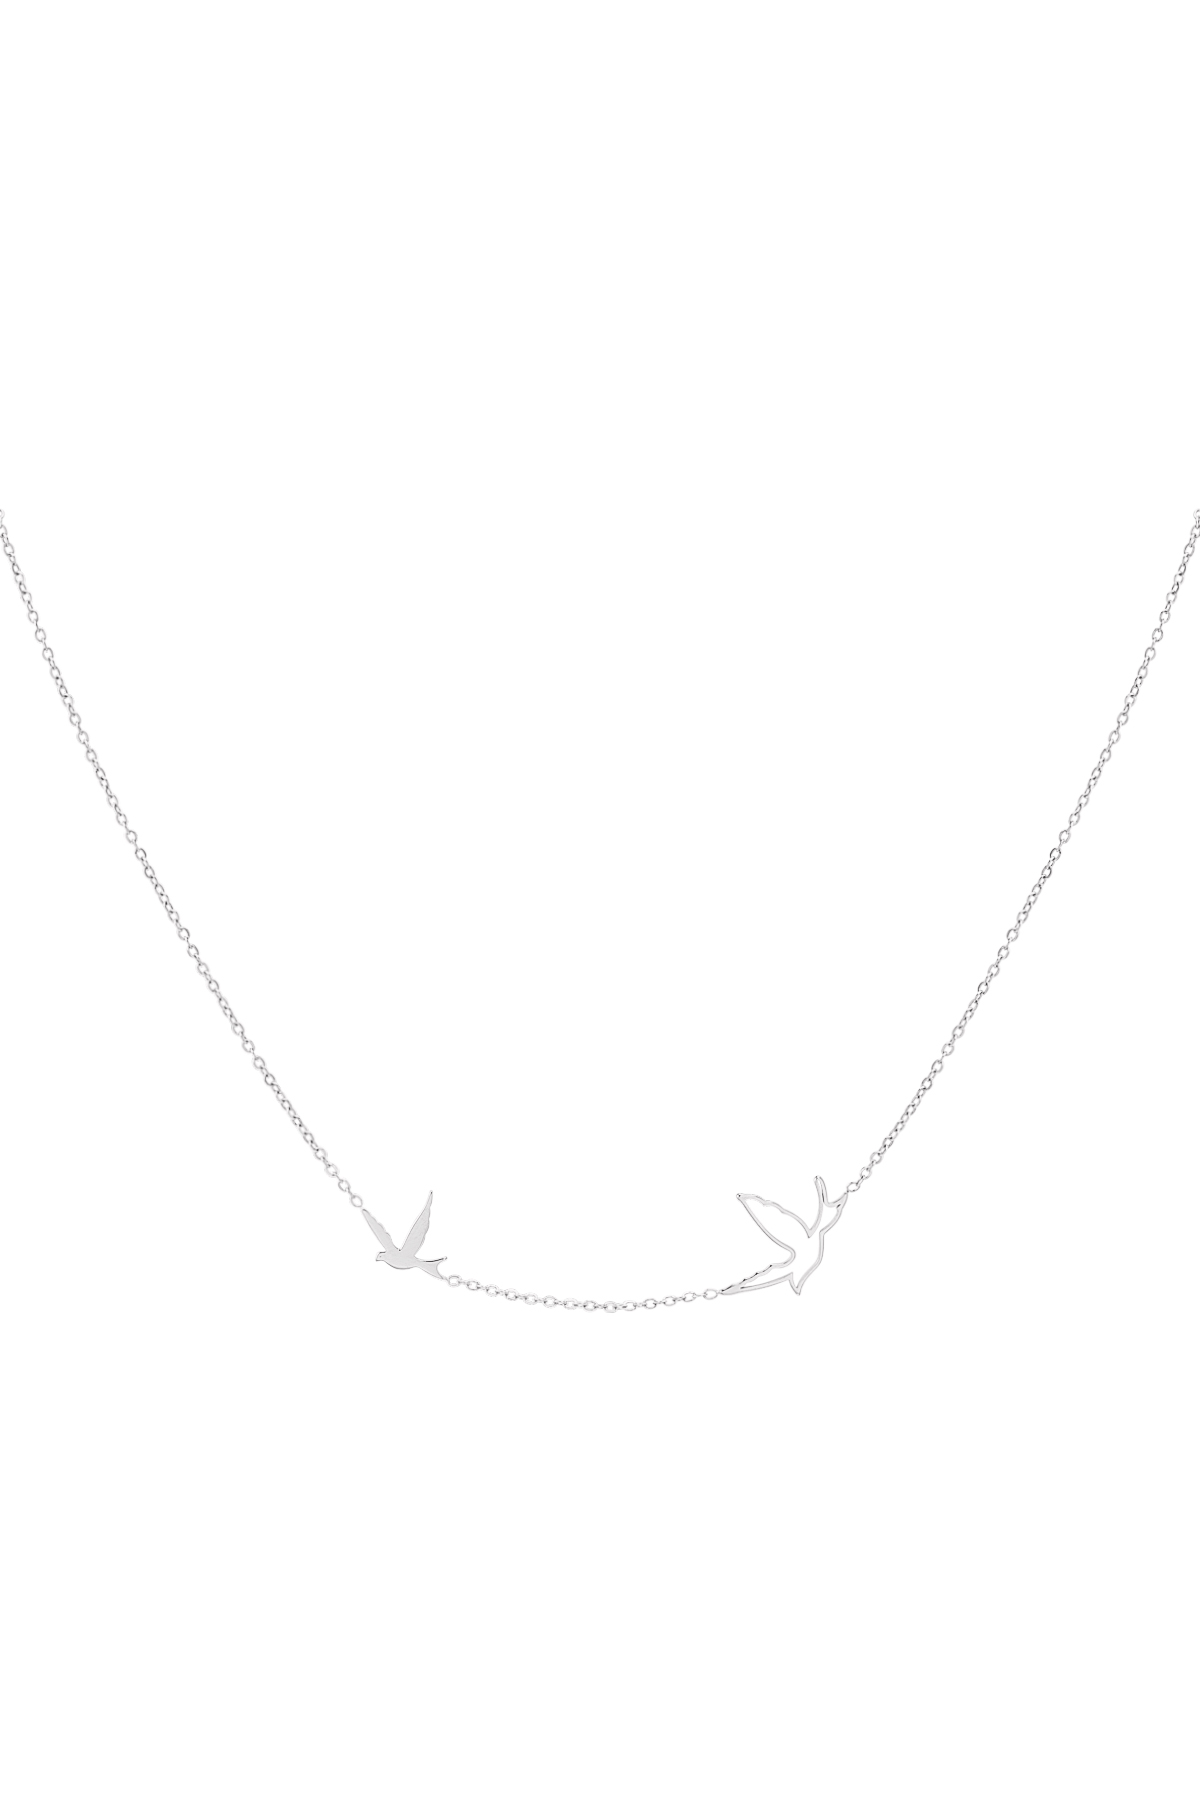 Necklace bird - silver h5 